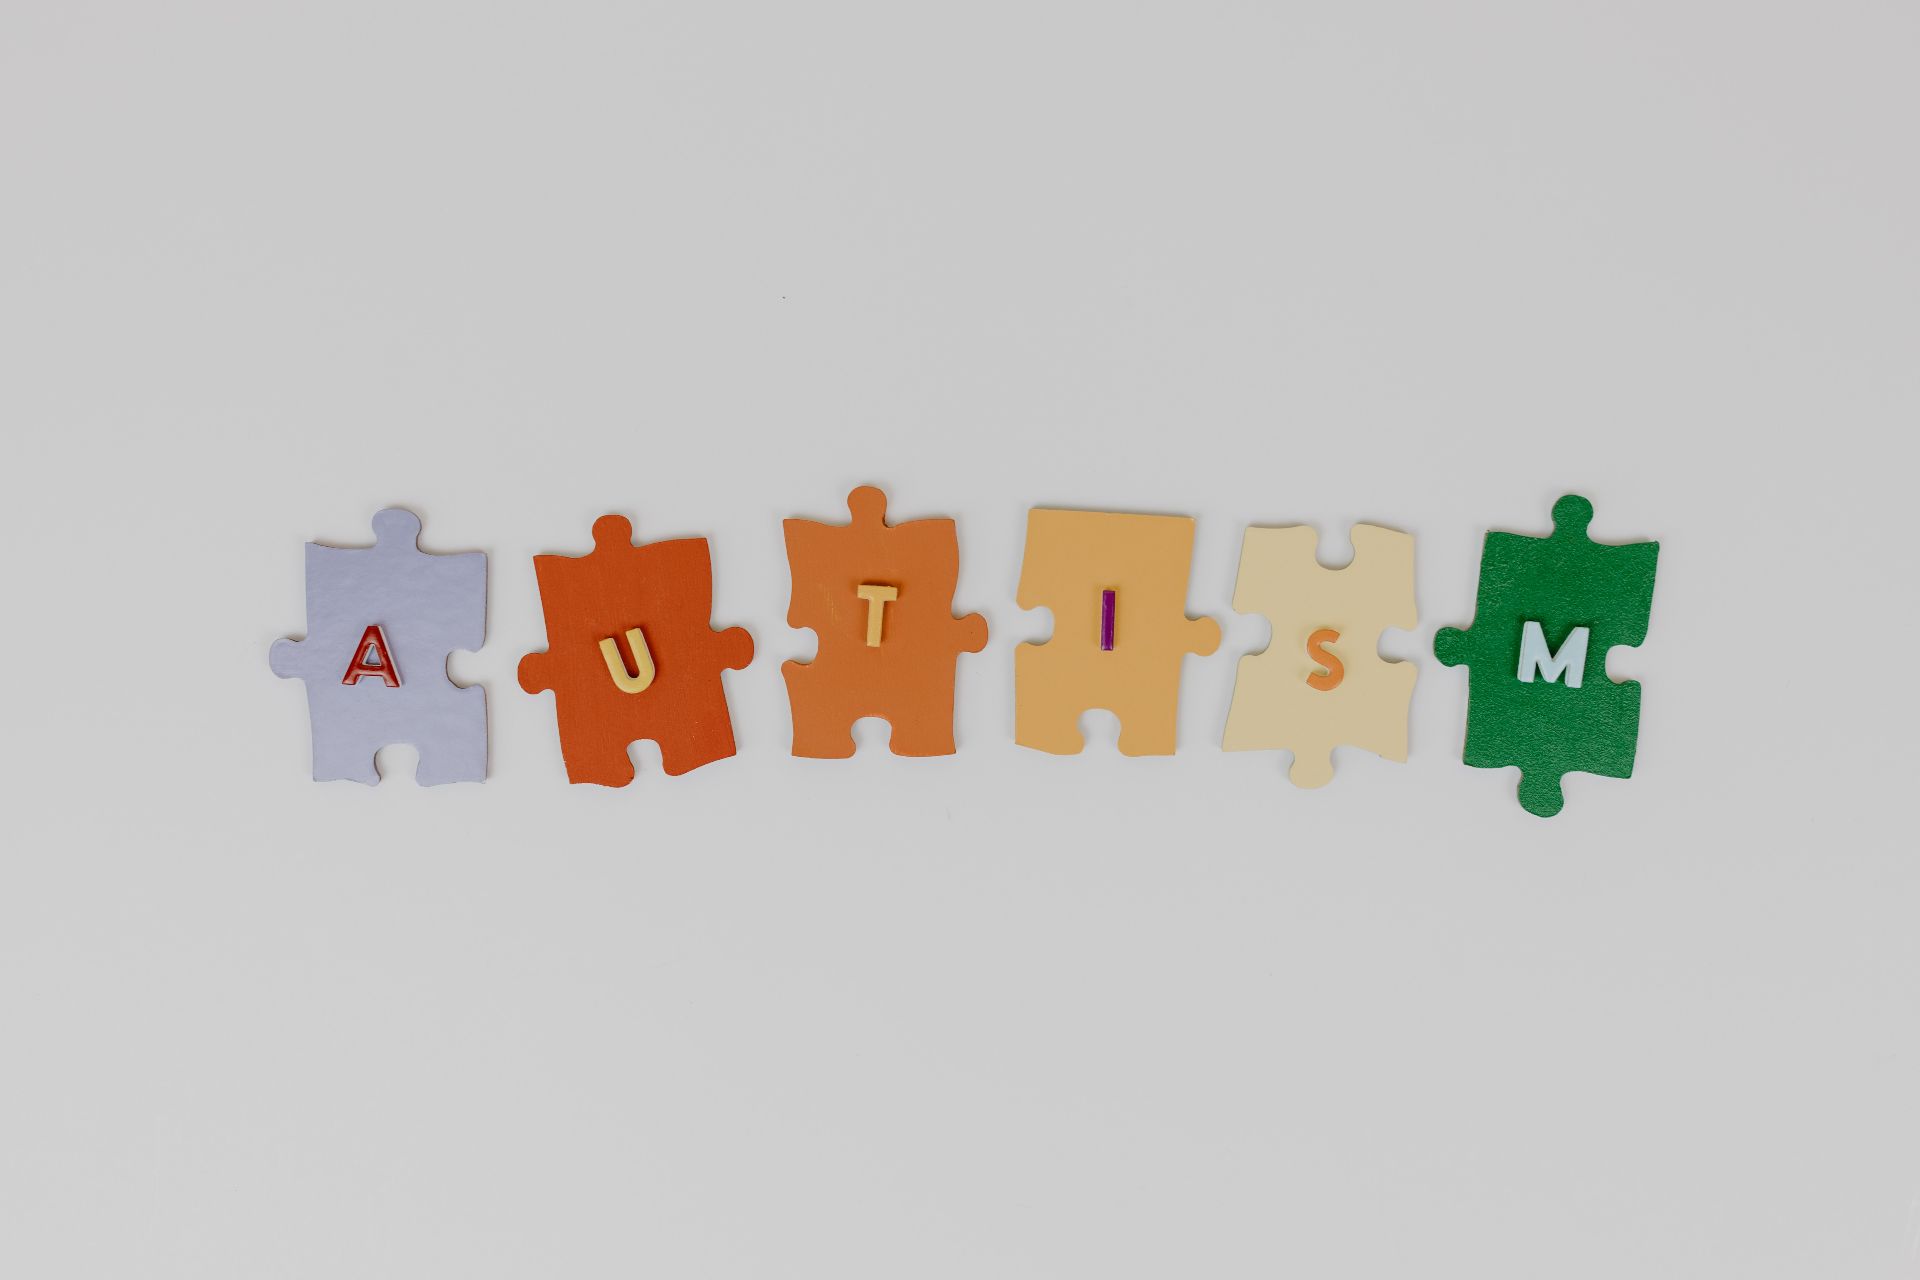 Ziua Internațională de Conștientizare a Autismului, marcată la 2 aprilie